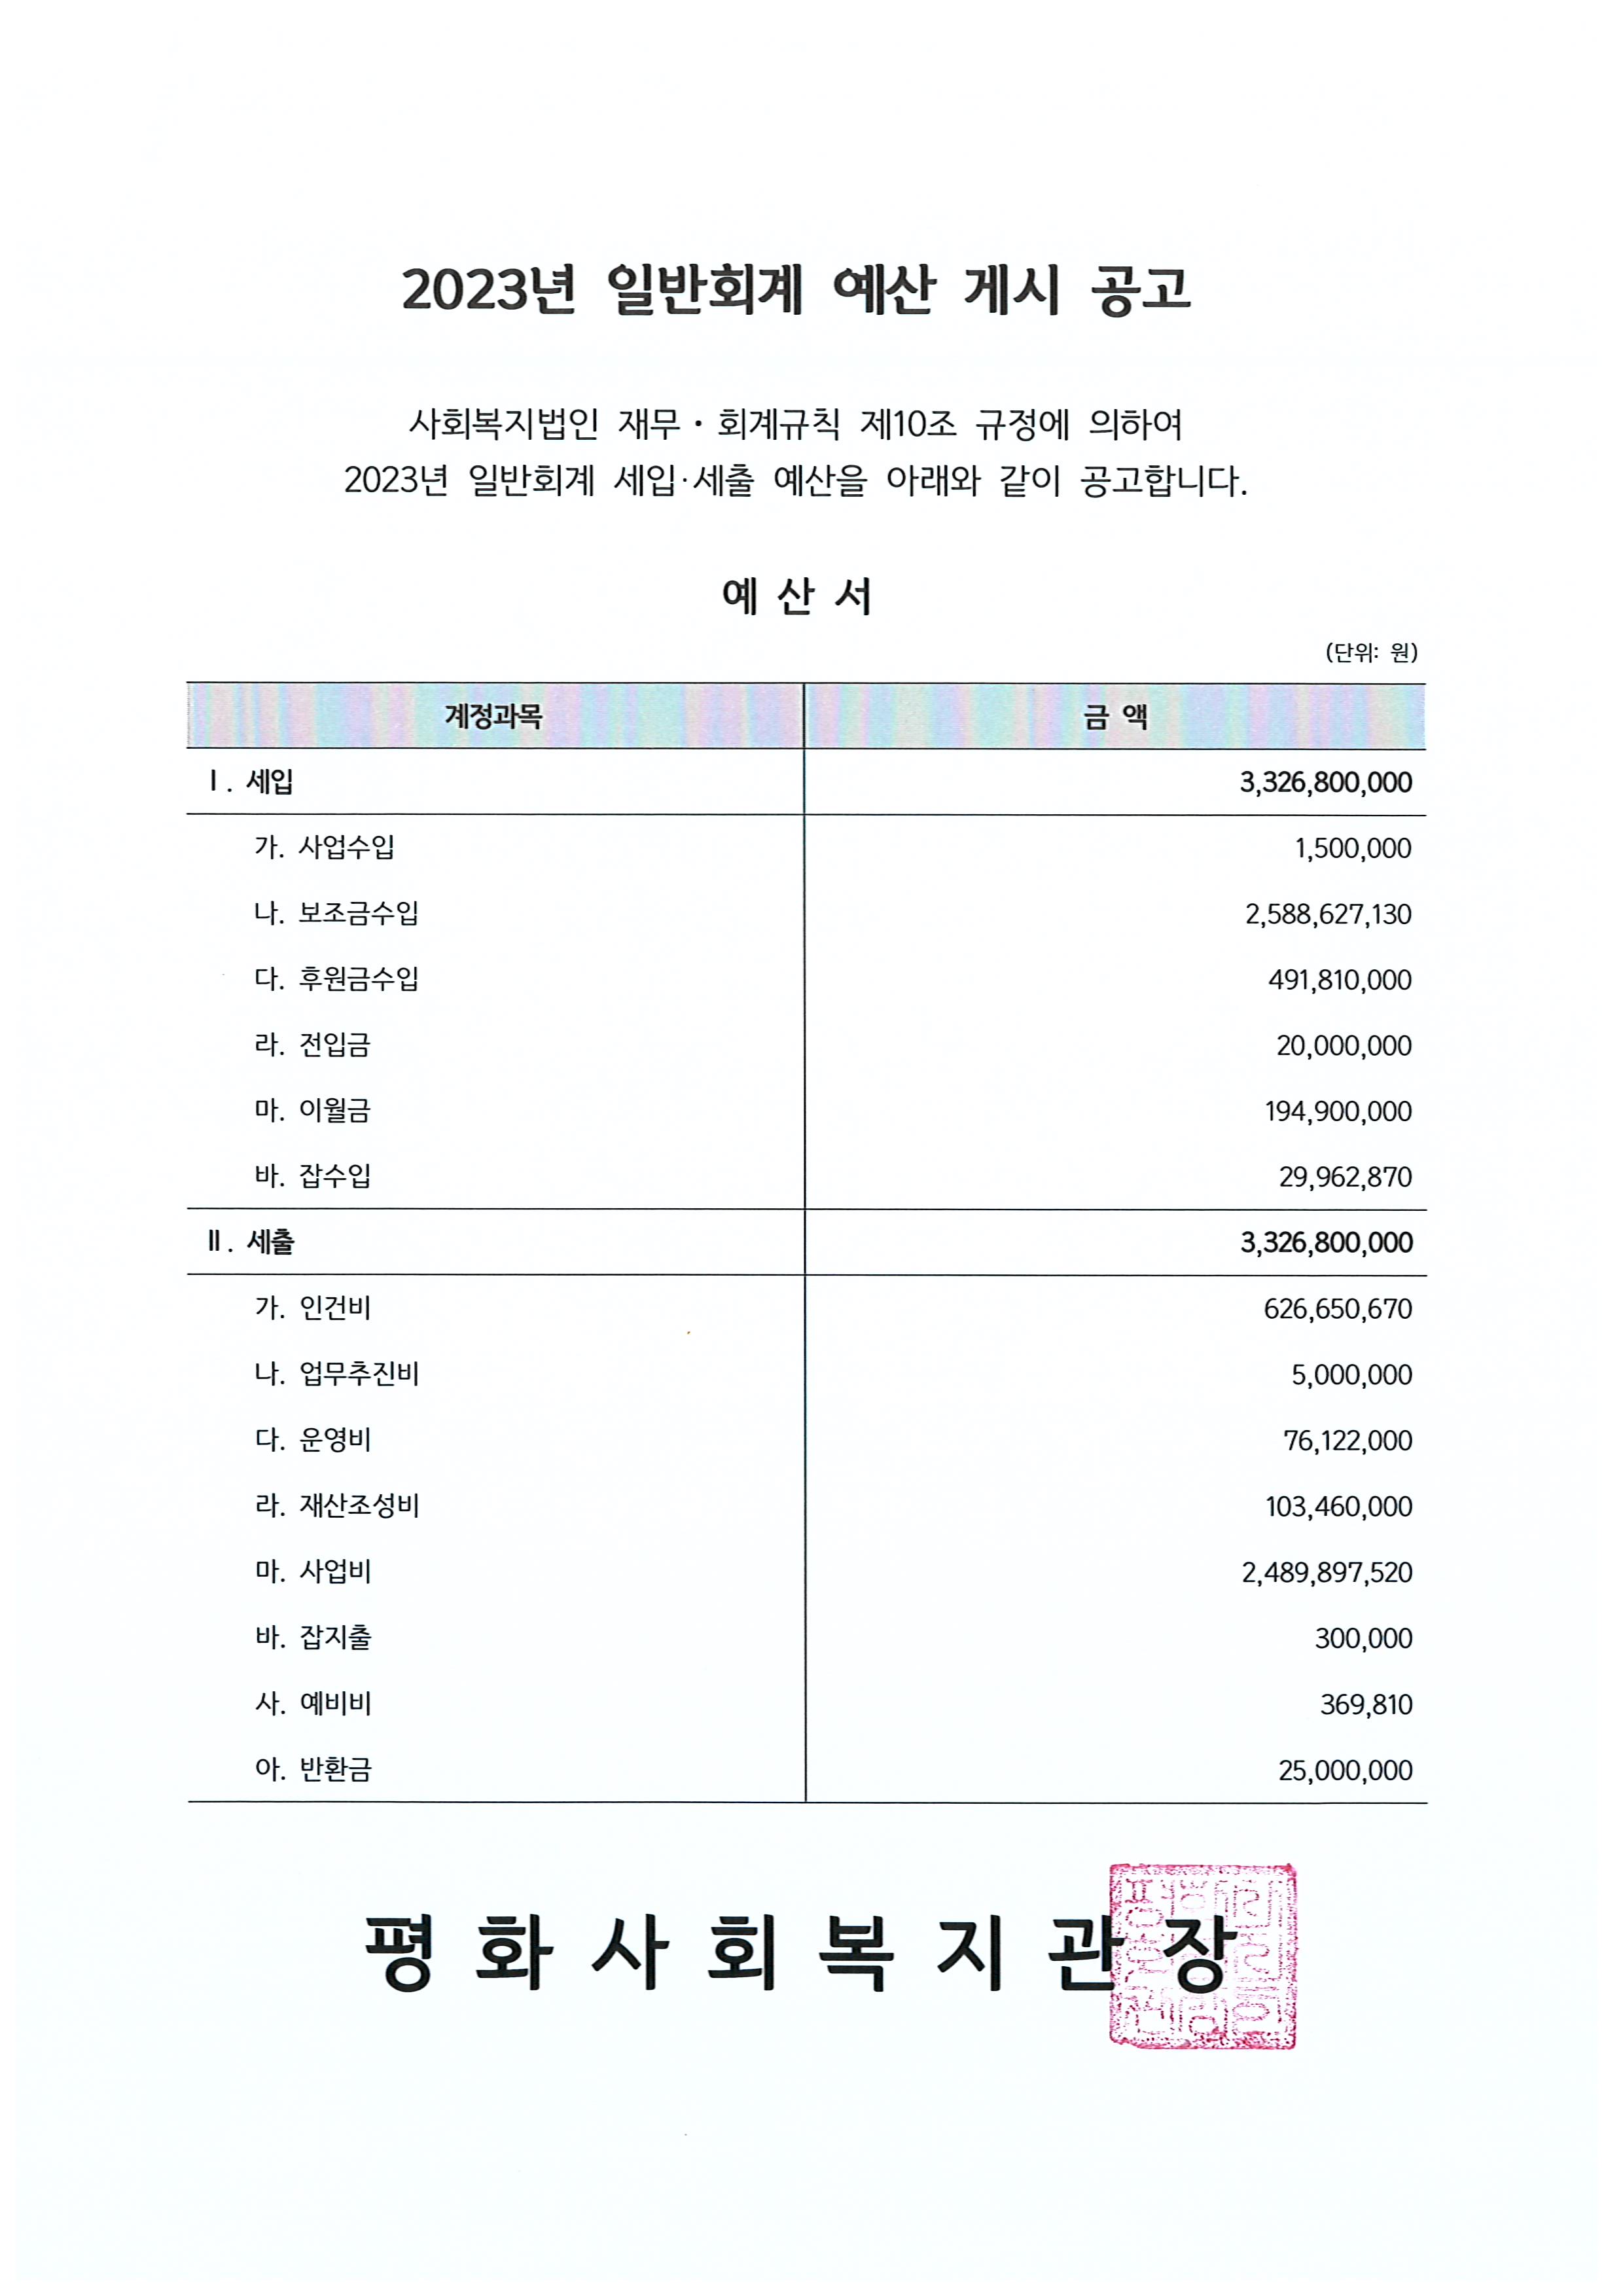 평화사회복지관 2023년 일반회계 예산서 게시 공고 (1).jpg